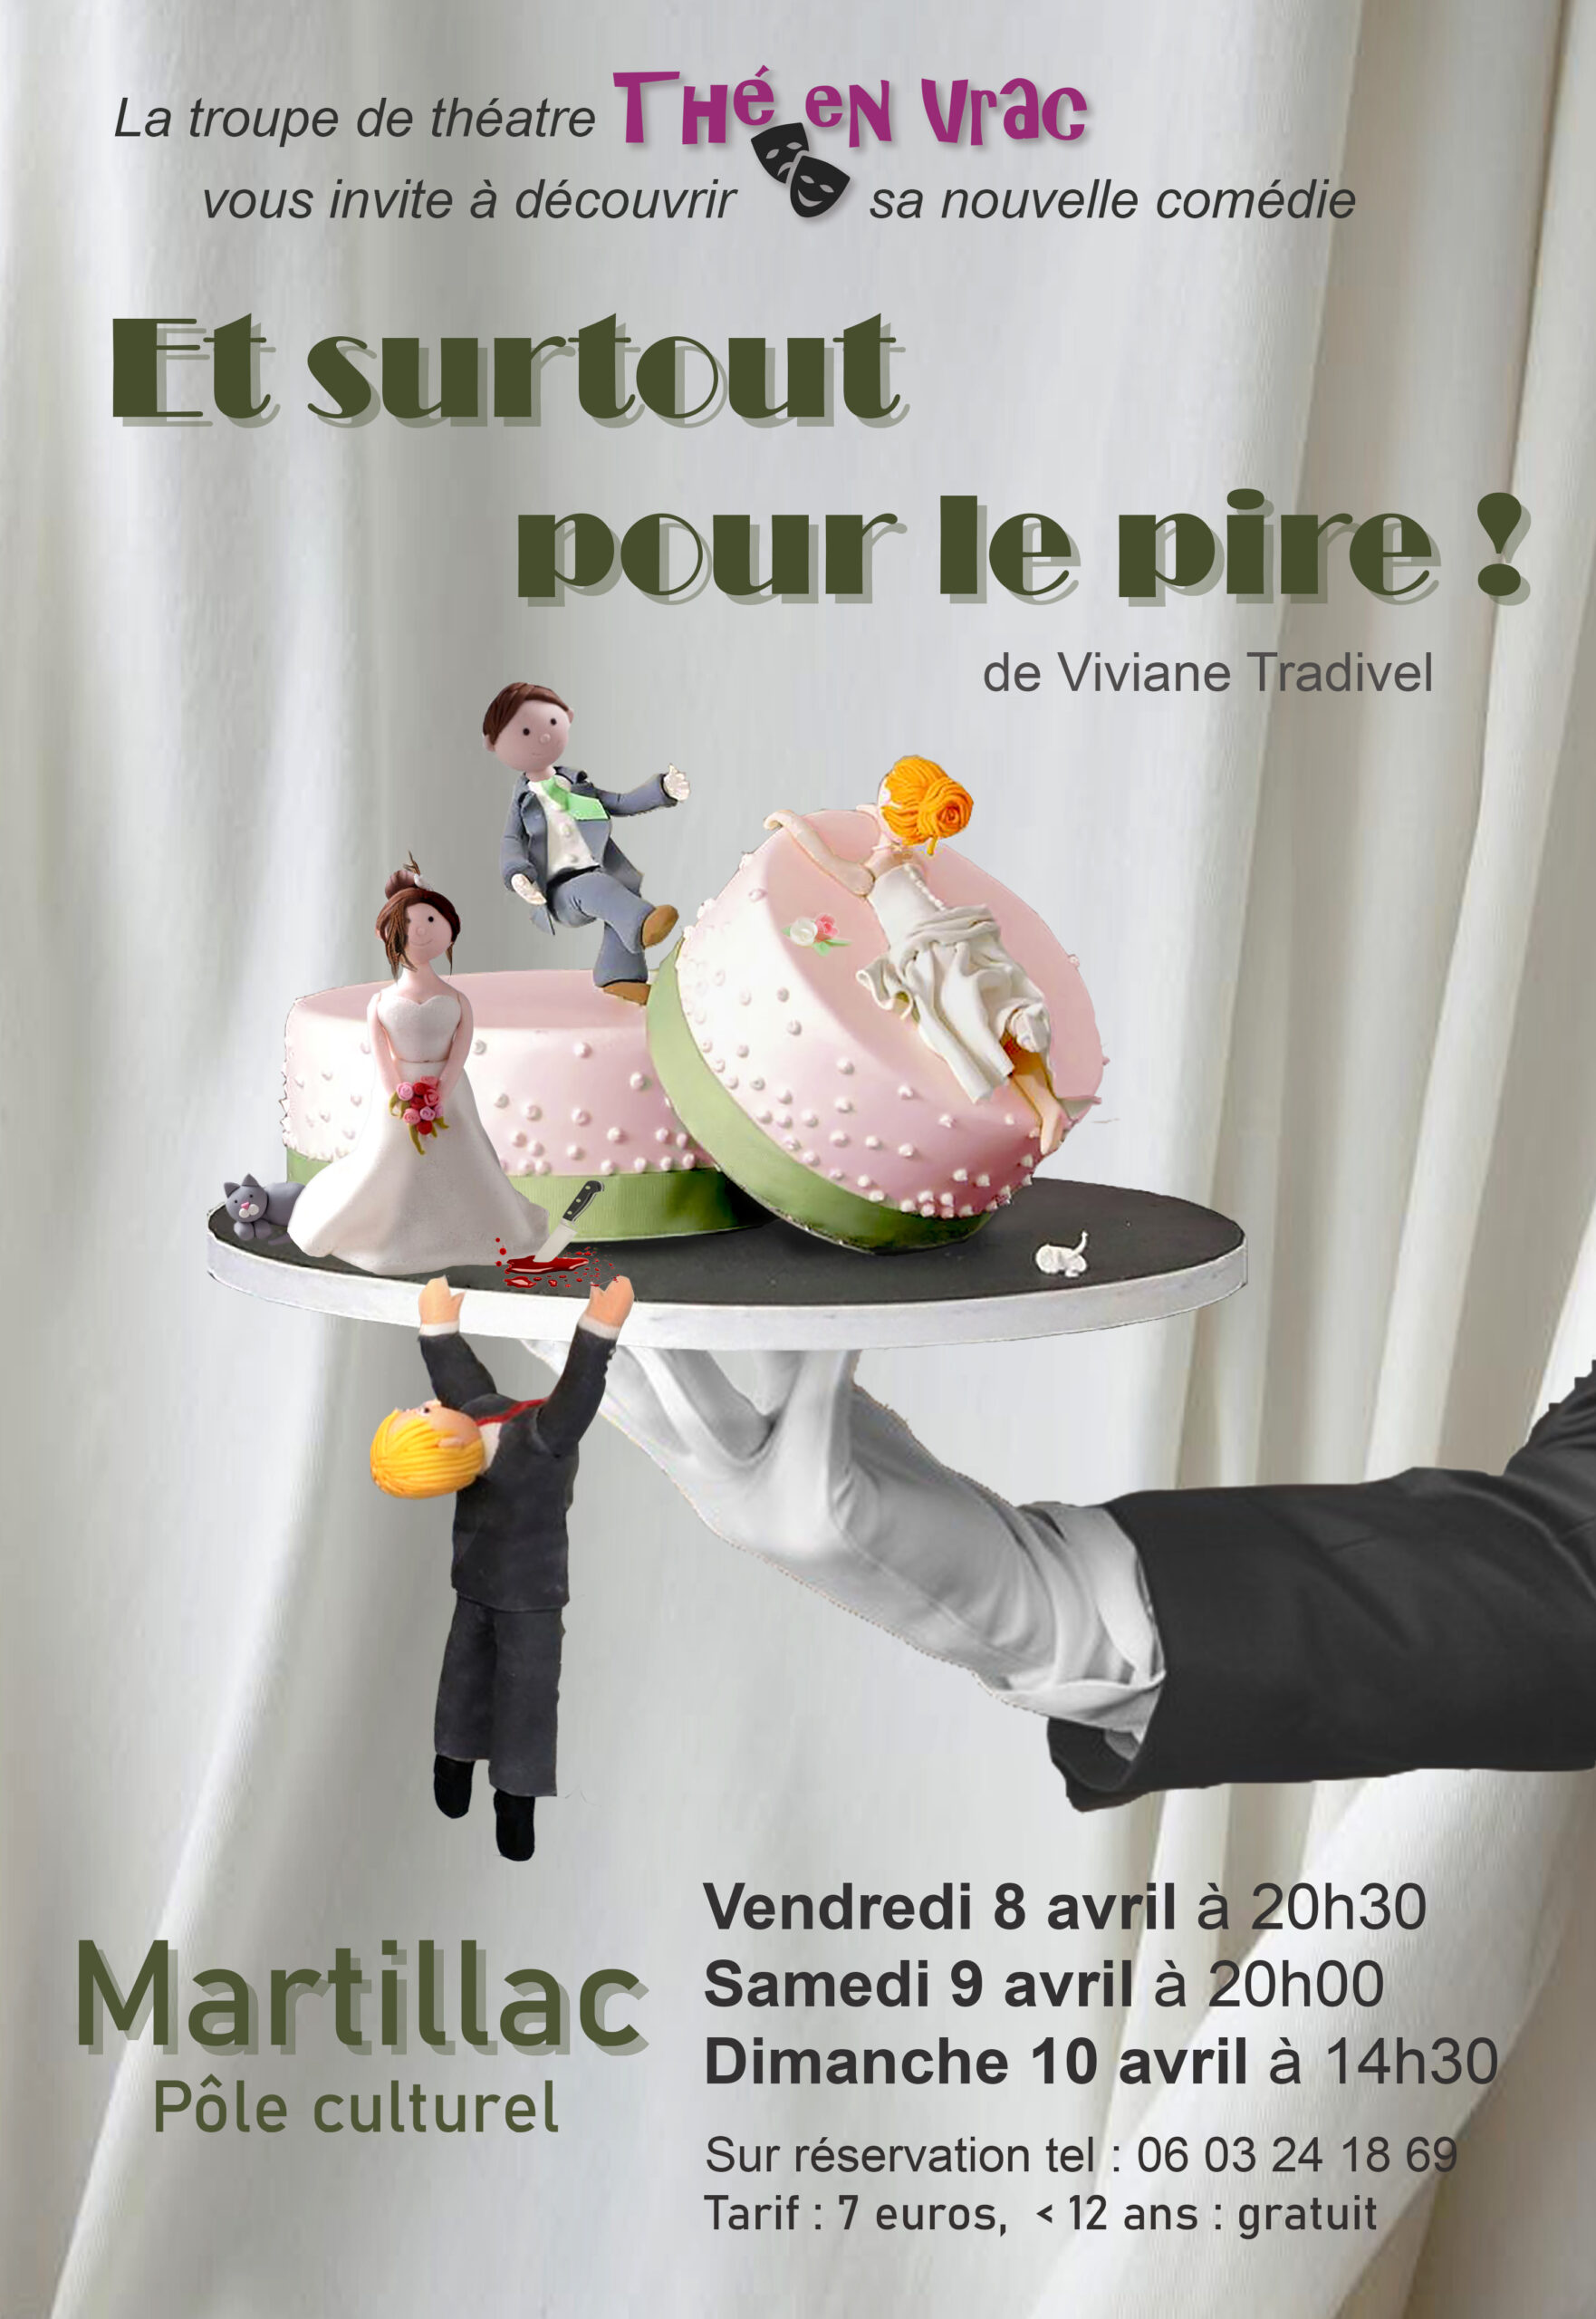 Pièce de théâtre "Et surtout pour le pire ! " par la troupe Thé en Vrac.